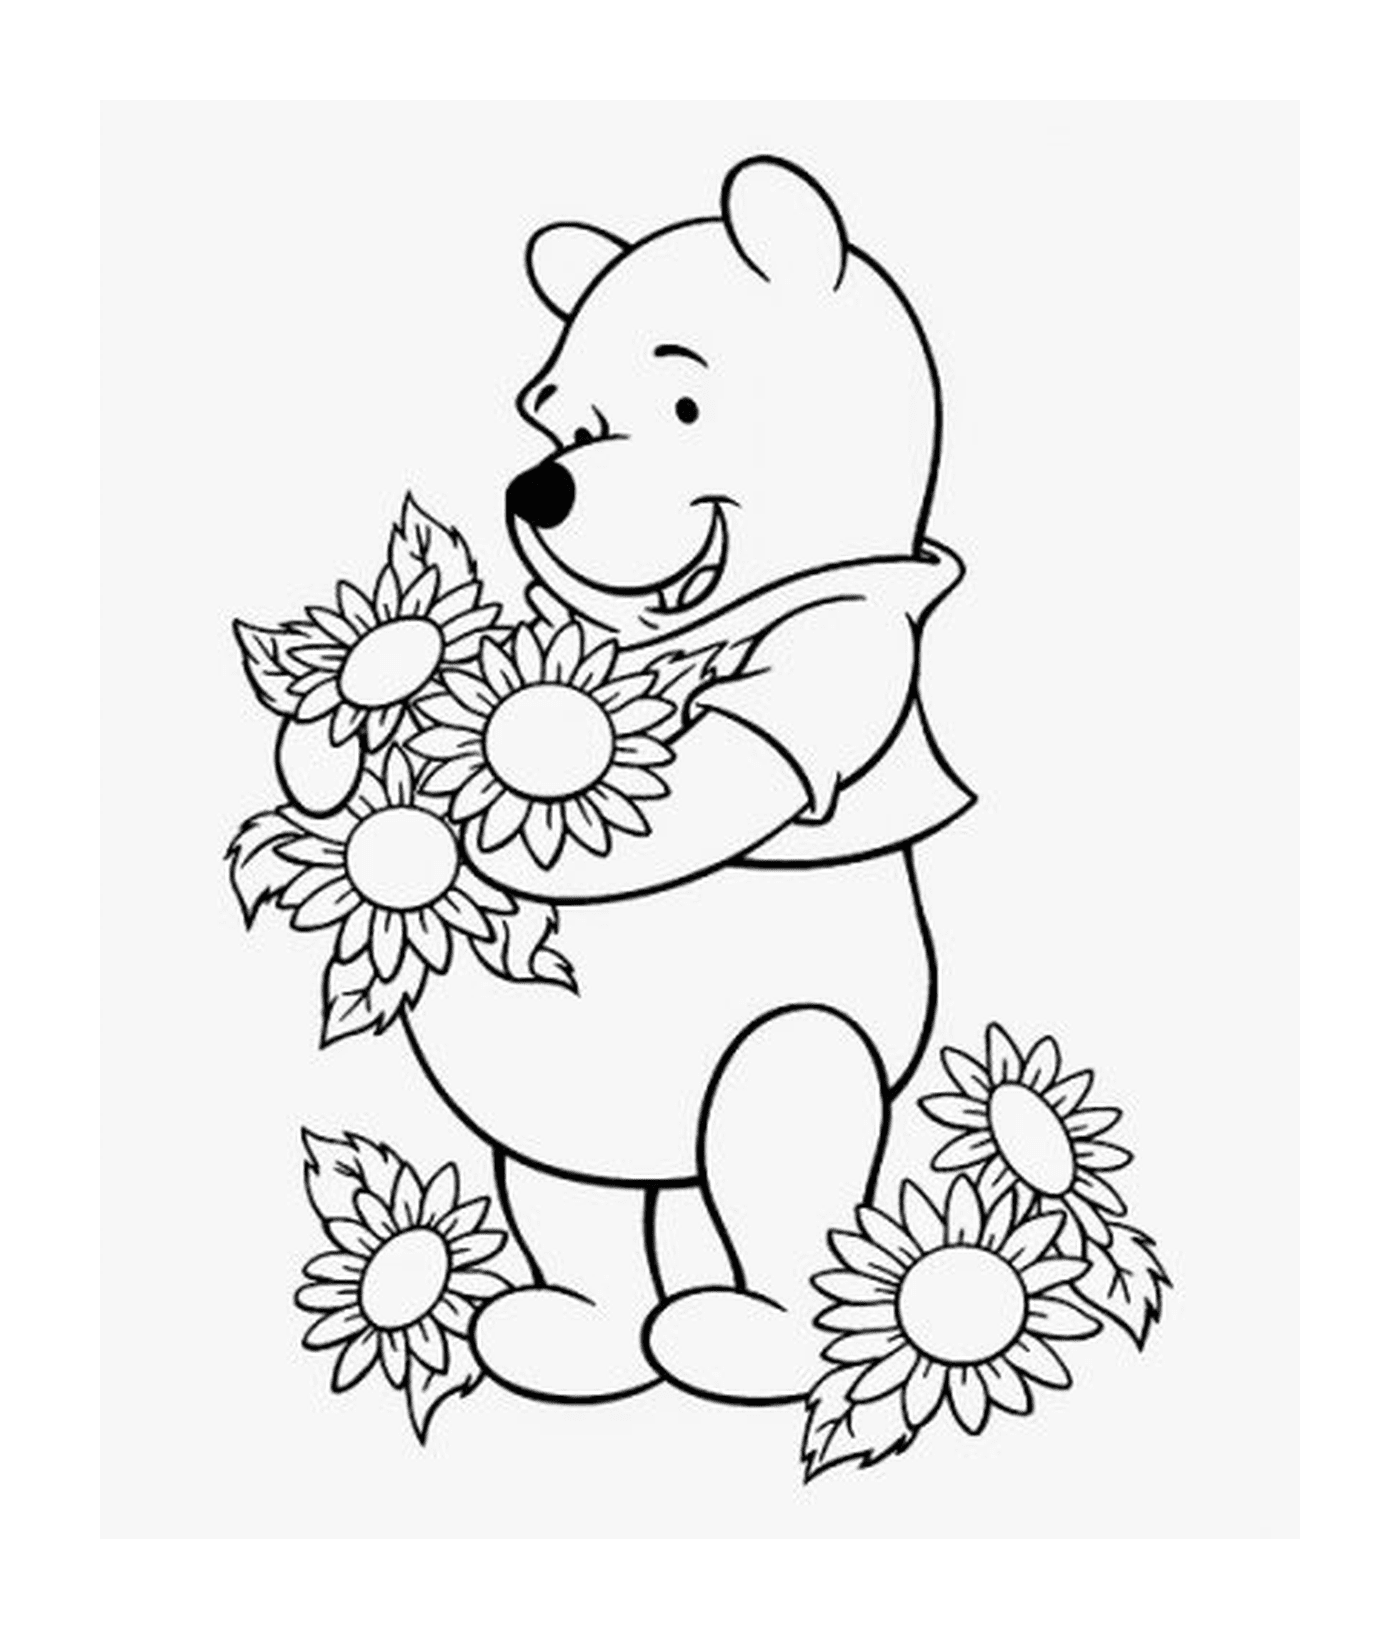 coloriage winnie de pooh aime les fleurs